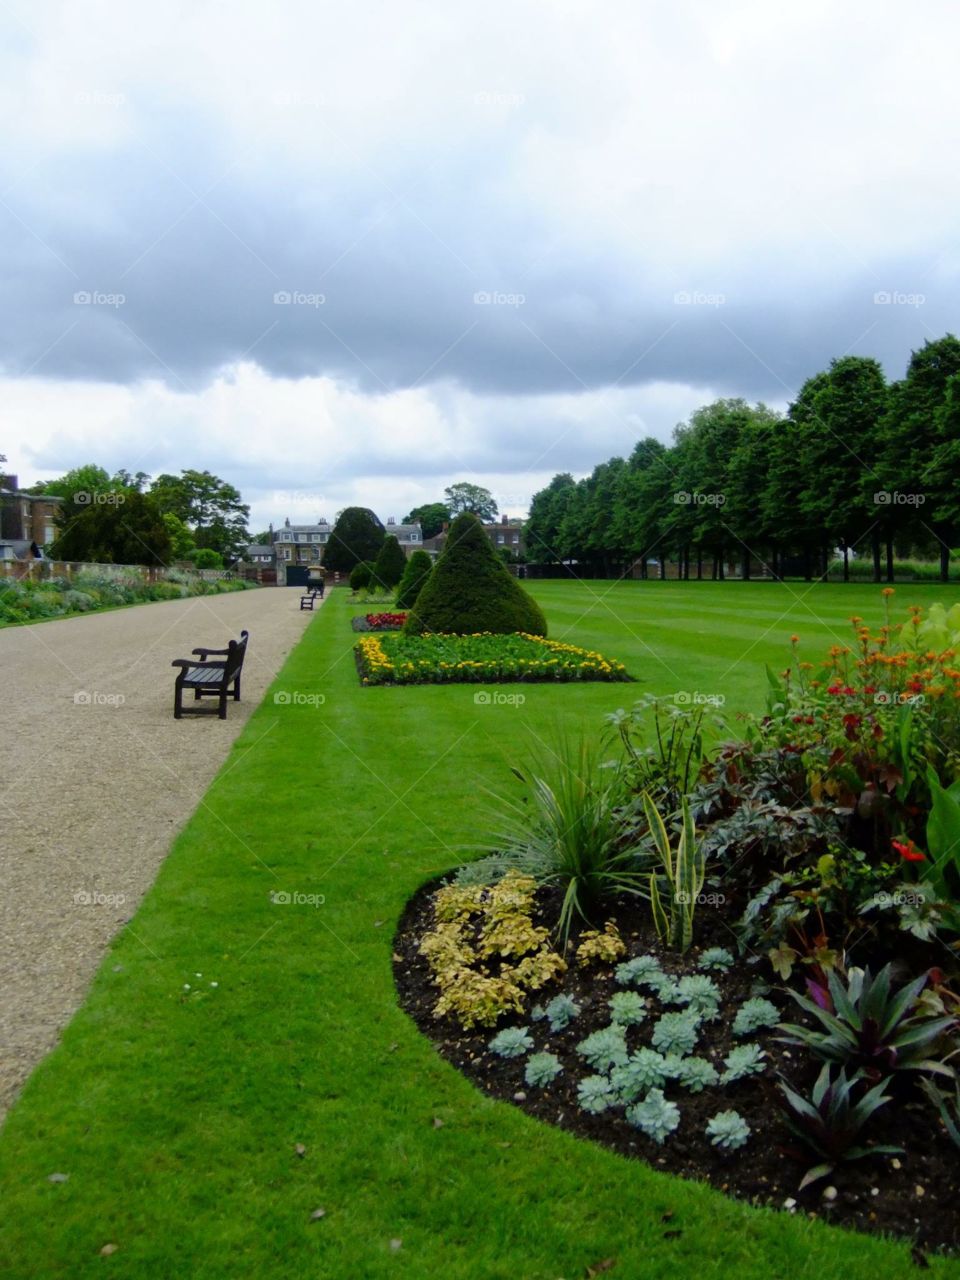 Hampton Court Palace gardens 